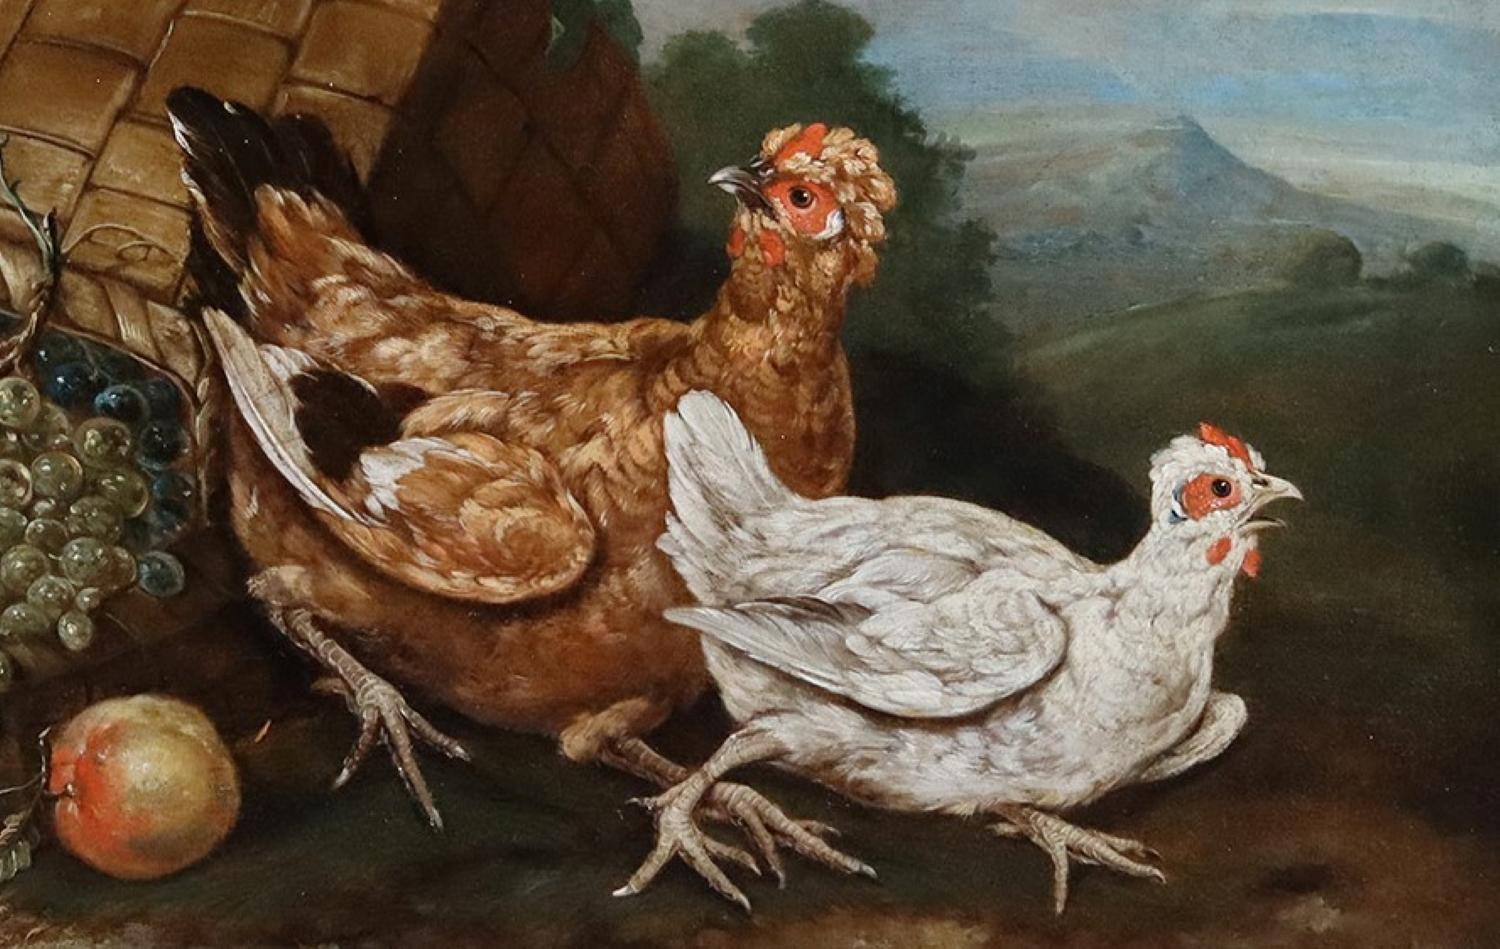 Giovanni Agostino Cassana 
(ca. 1658 - 6. Mai 1720) Venezianer

Vögel mit einem umgedrehten Korb voller Früchte

Öl auf Leinwand: 25 x 35 Zoll. Rahmen: 33 x 43 Zoll.

Abate, oder Giovanni Agostino Cassana (ca. 1658 - 6. Mai 1720) war ein